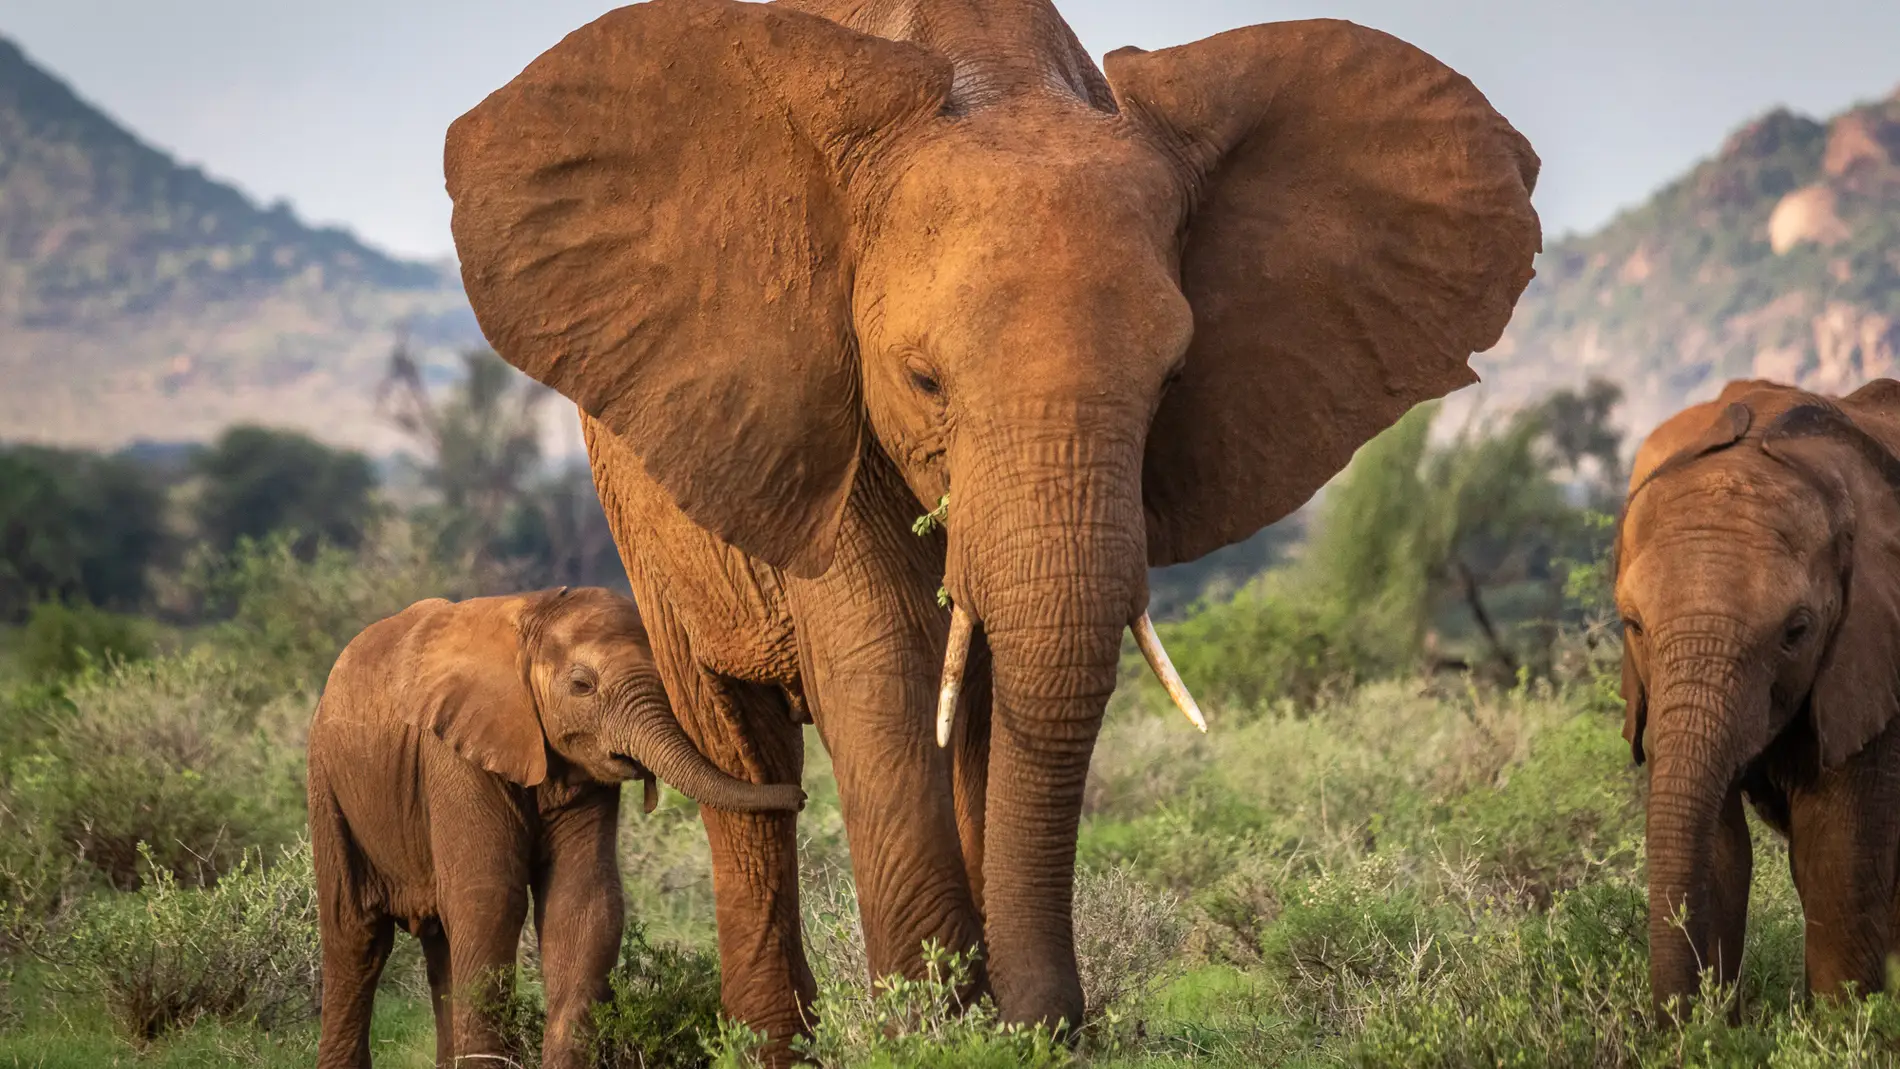 Madre elefante y su cría en Kenia